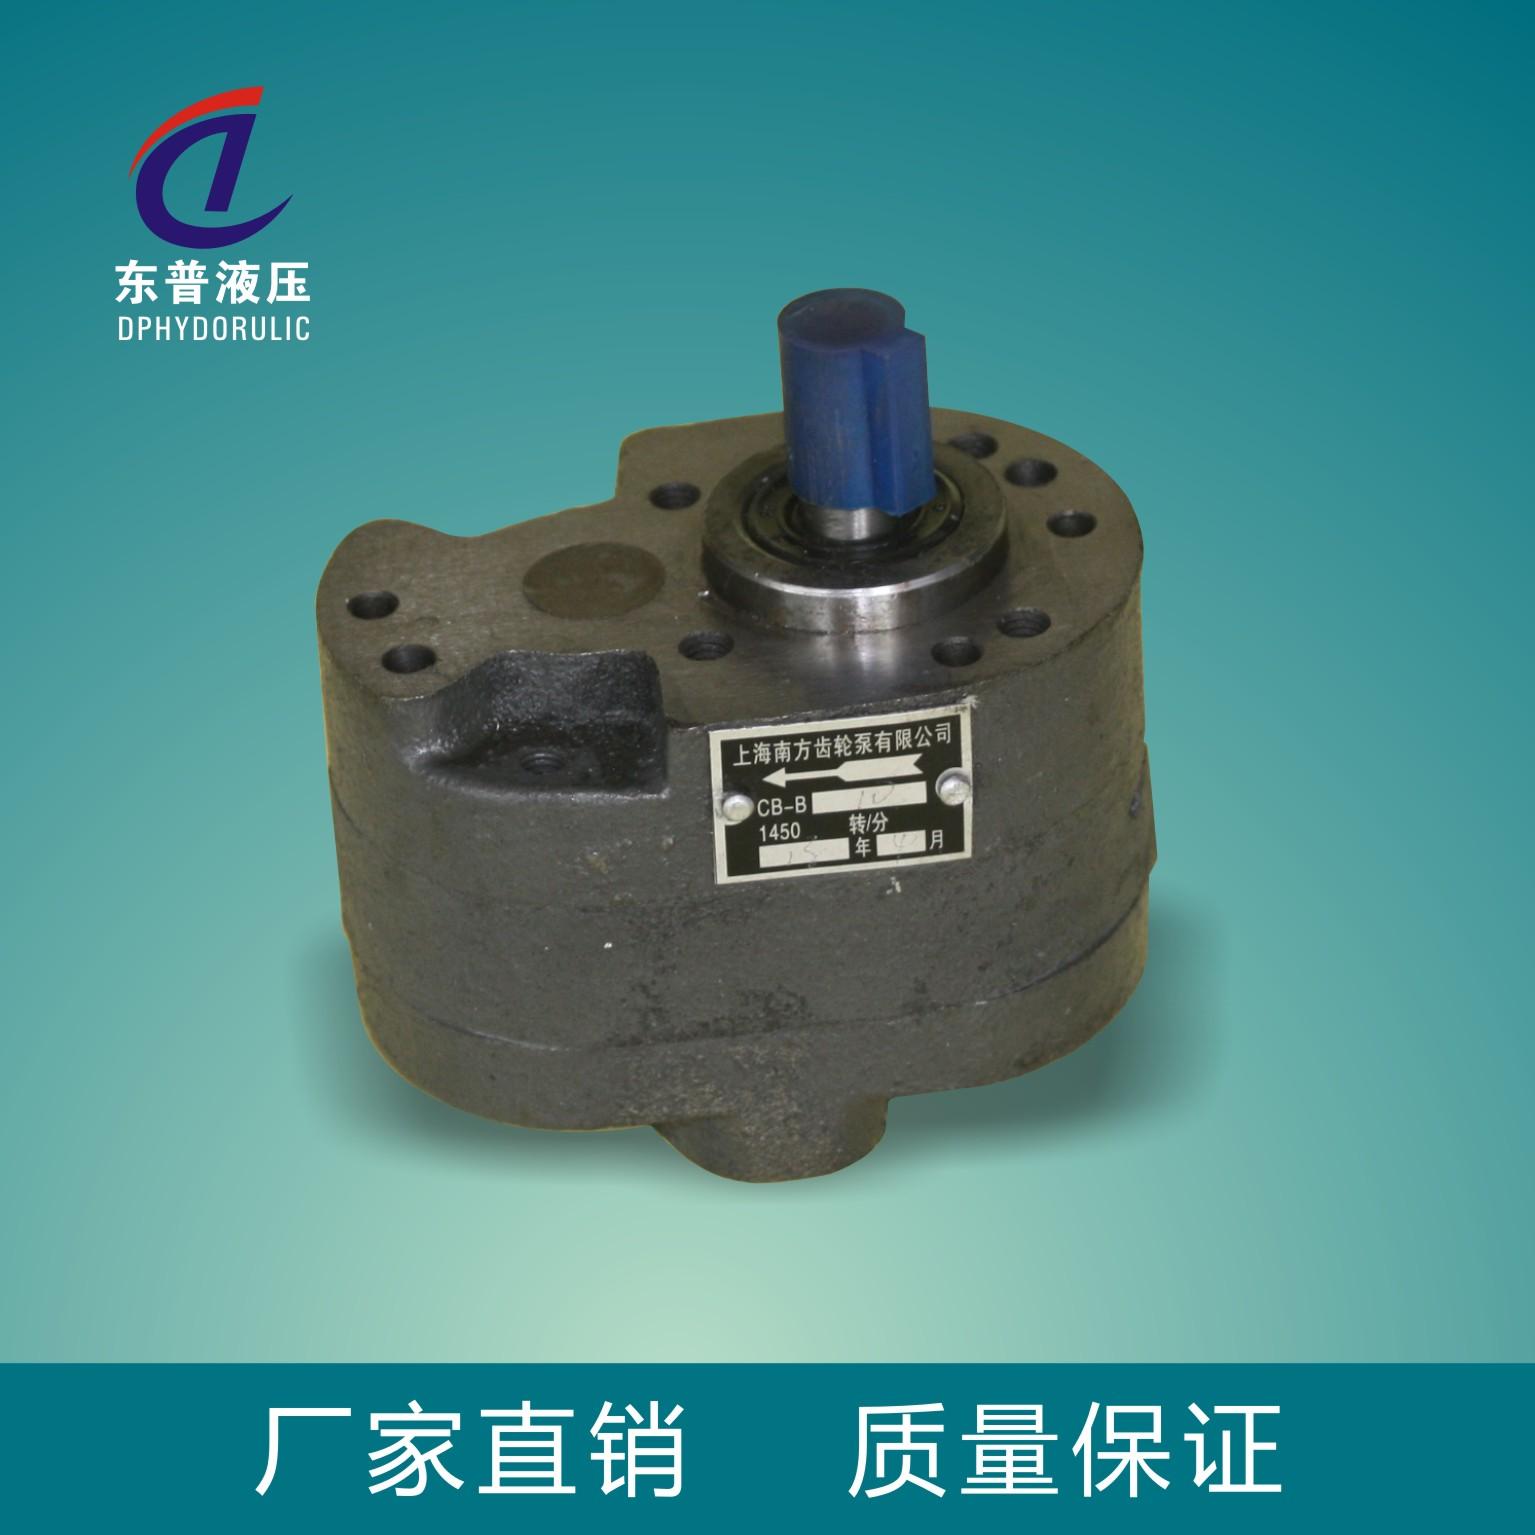 低价供应液压小型齿轮泵 CB-B大流量低压齿轮泵 磨床专用